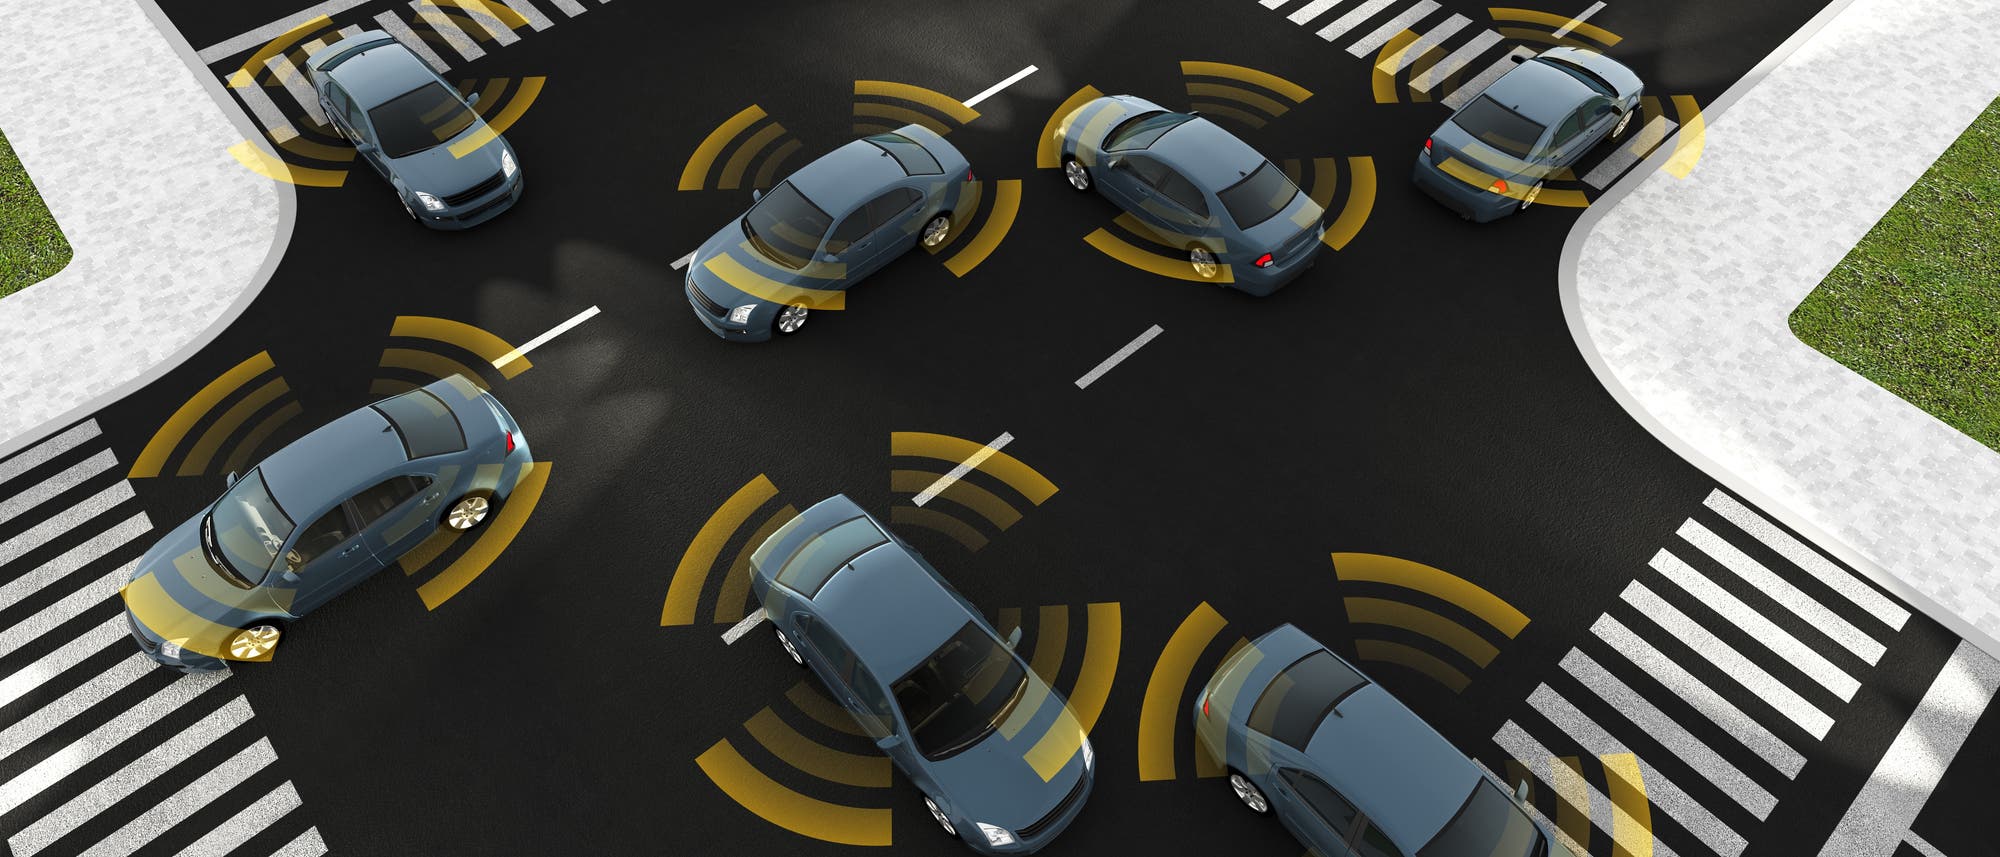 Autonome Autos der Zukunft kommen heil über die Kreuzung, weil sie mit ihren Sensoren über den perfekten Rundumblick verfügen.